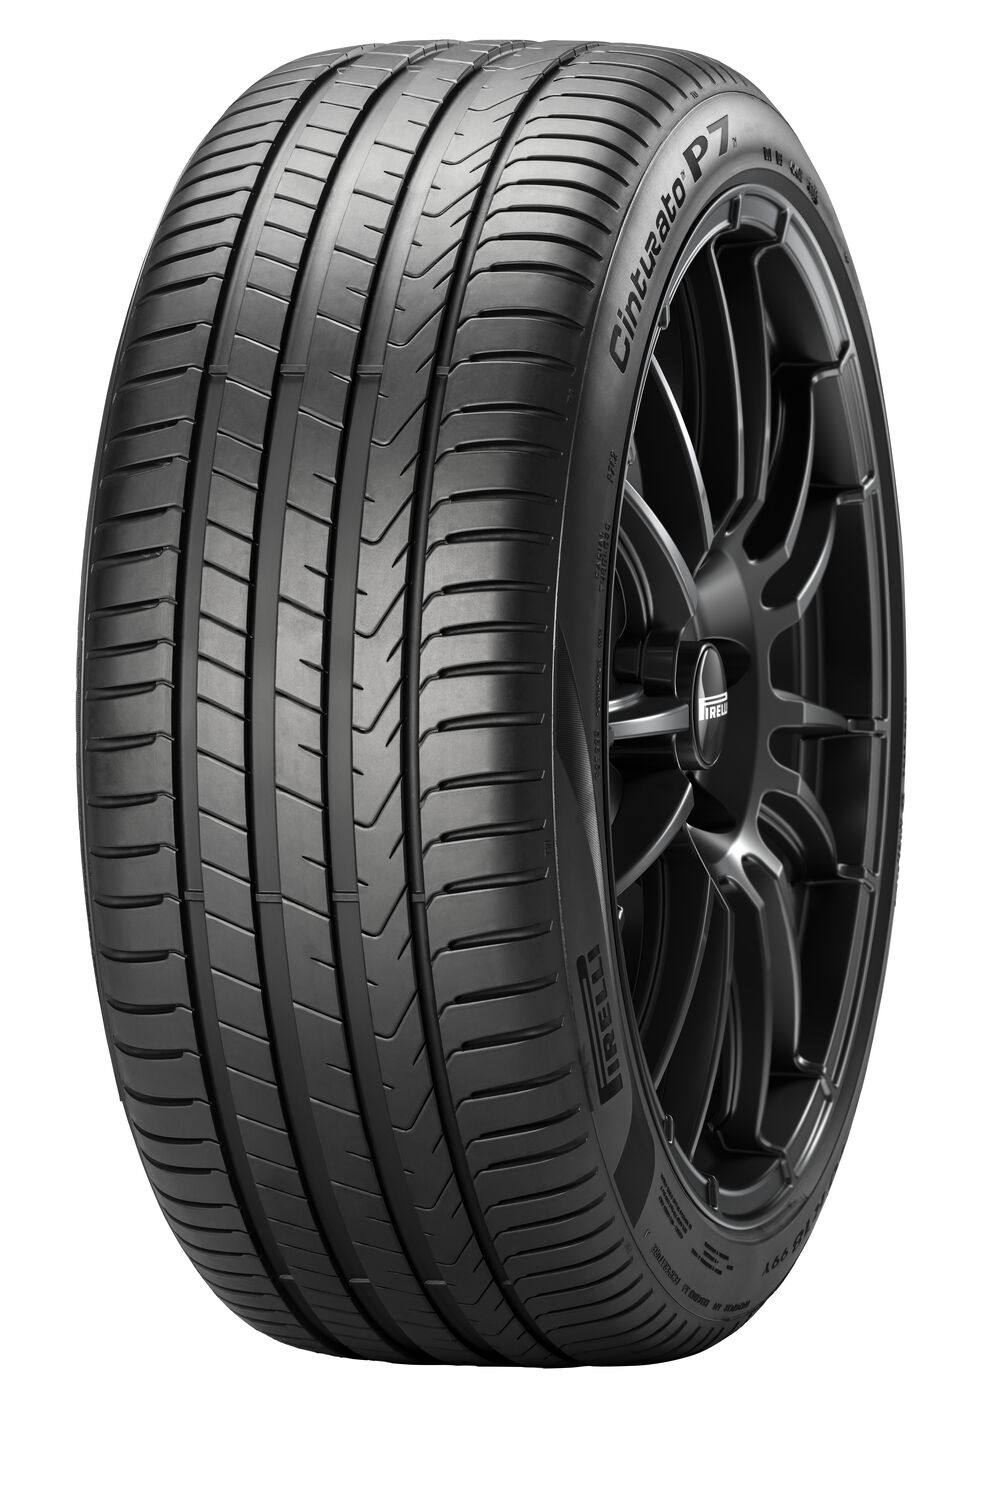 Gomme Nuove Pirelli 225/50 R17 98Y P7C2 XL pneumatici nuovi Estivo